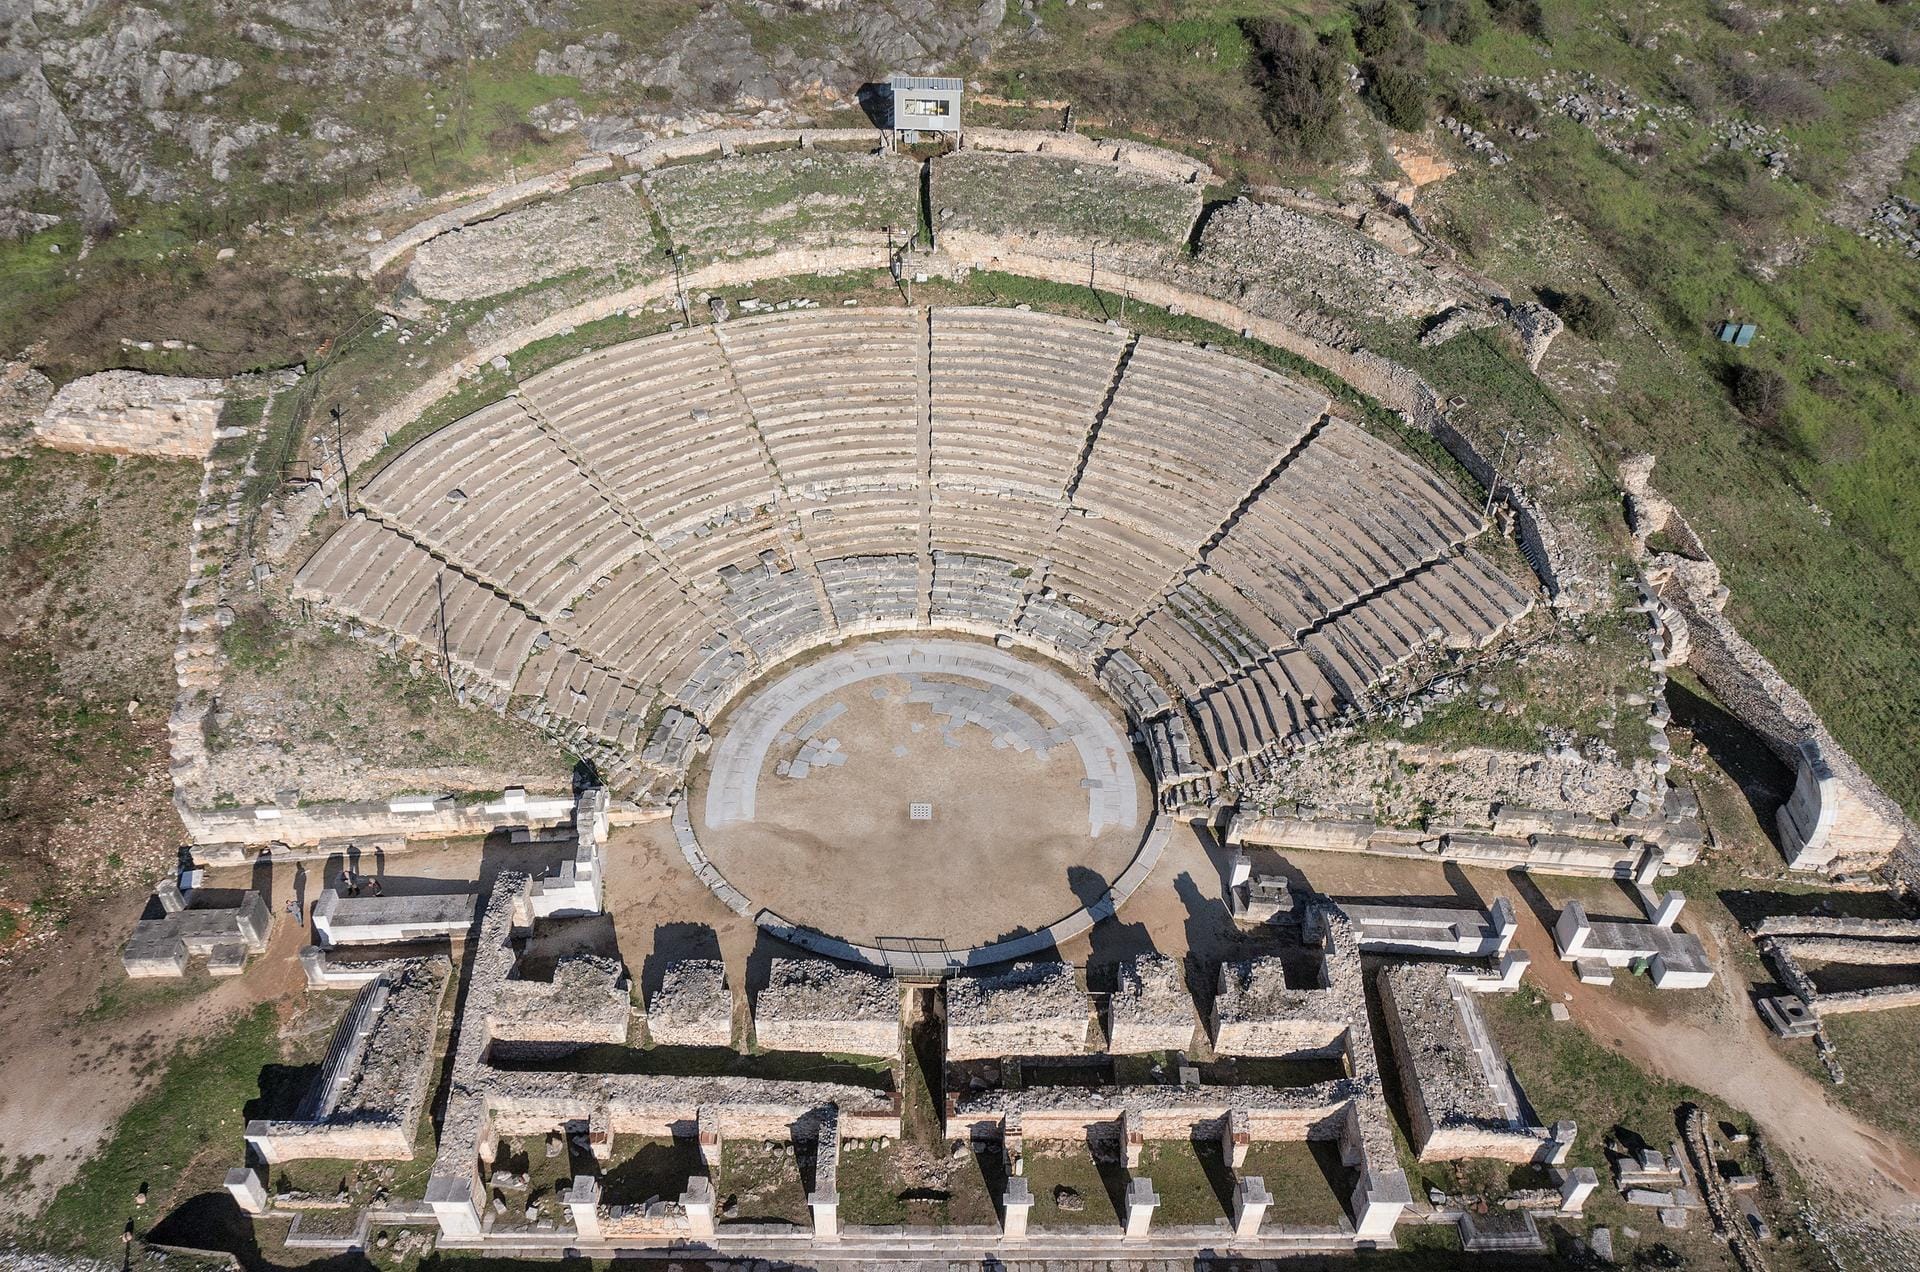 Das Amphitheater in Philippi in Griechenland hat es ebenfalls zum Kulturerbe geschafft.